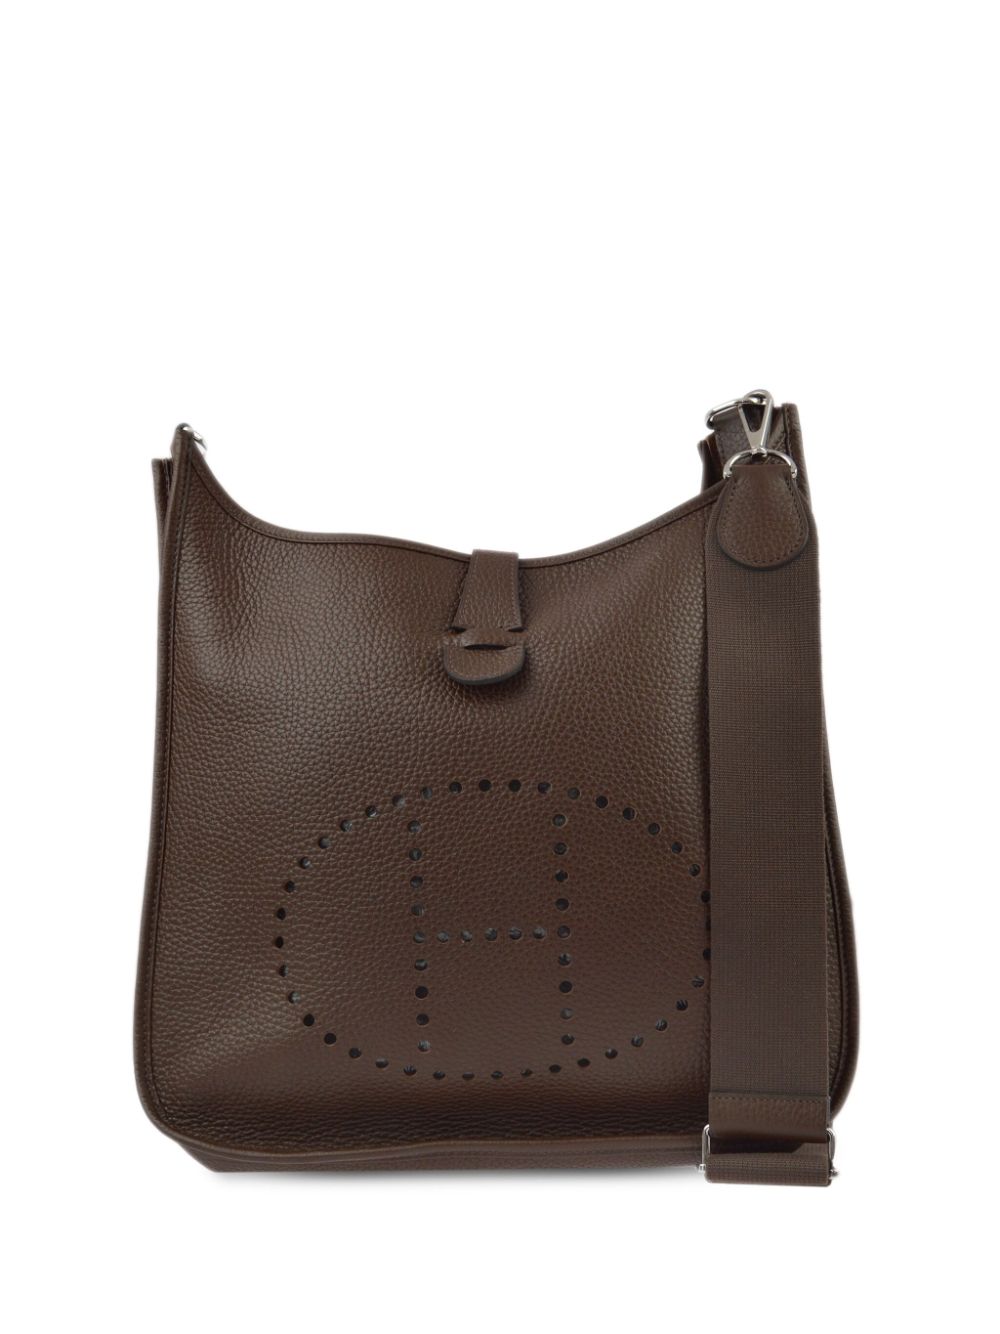 Hermès Pre-Owned 2013 Evelyne GM shoulder bag - Marrone